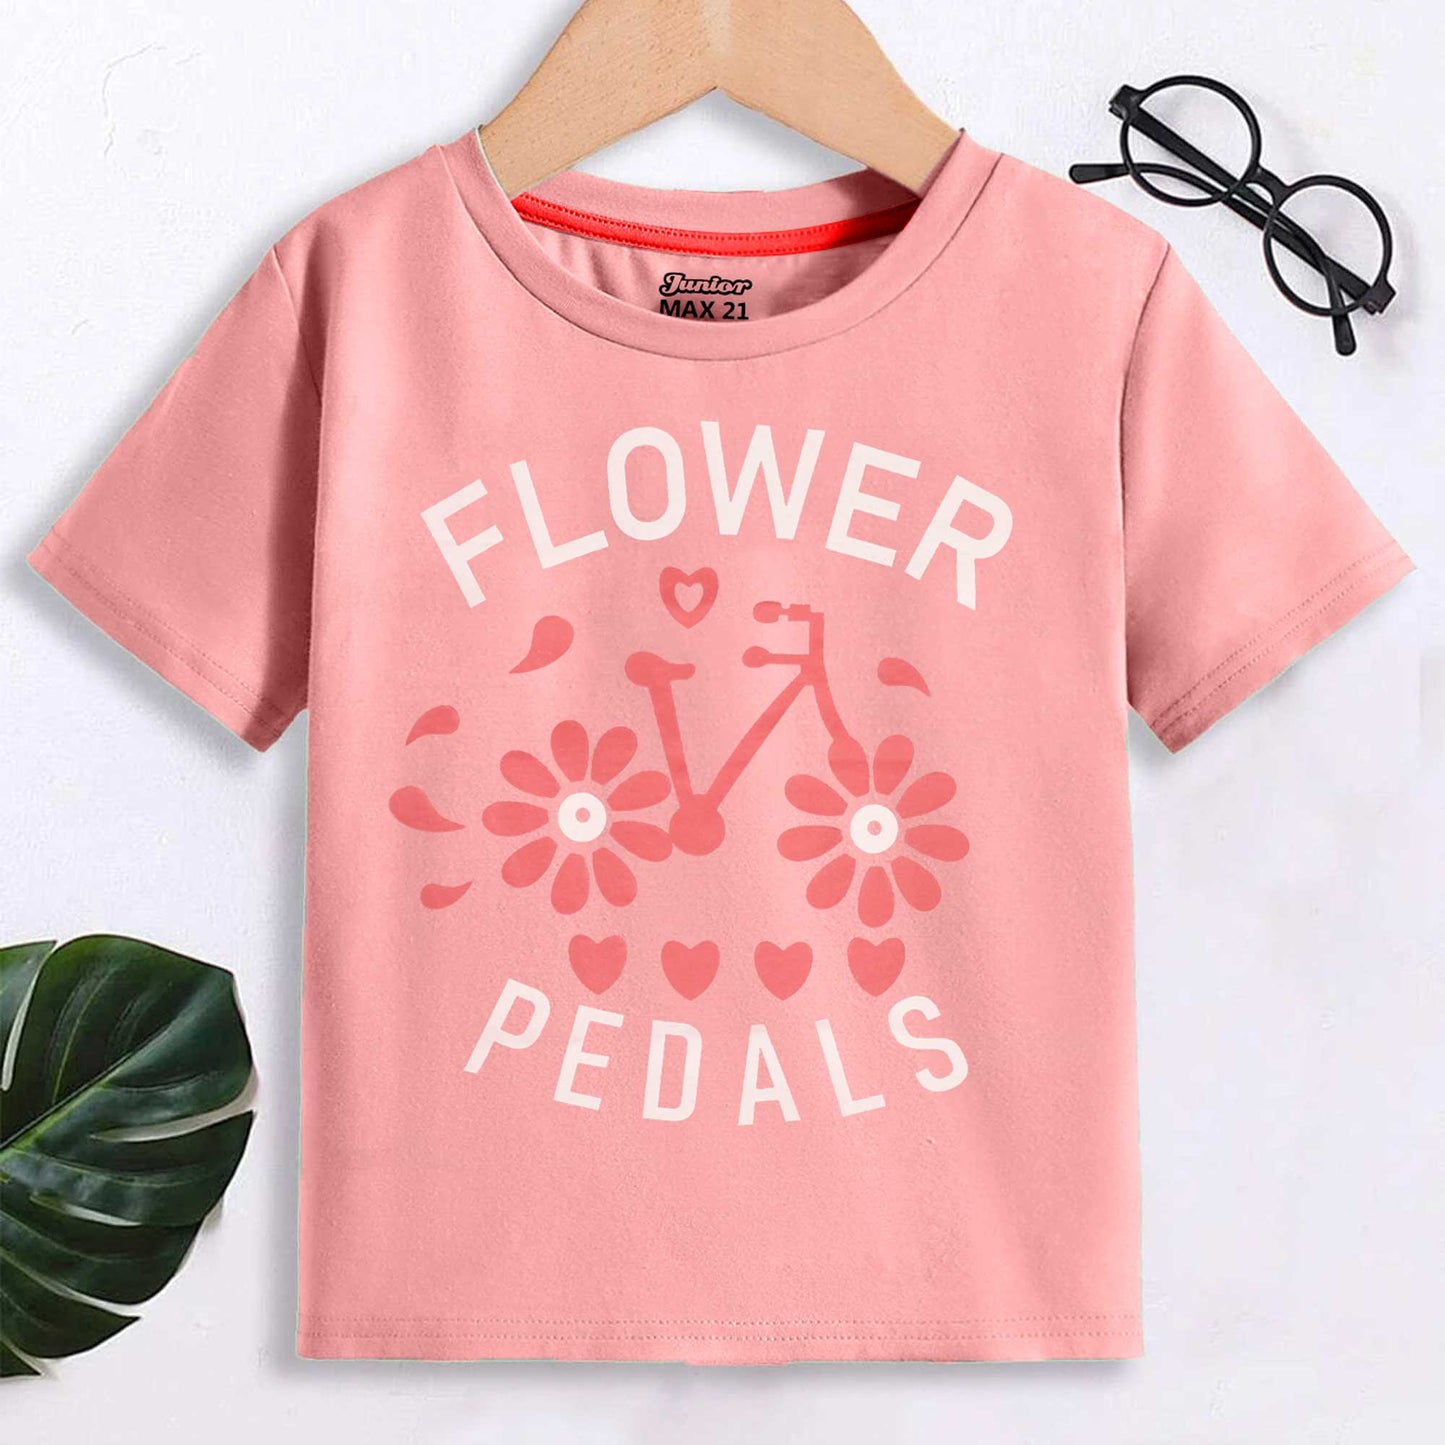 Junior Max 21 Kid's Flower Printed Tee Shirt Girl's Tee Shirt SZK Pink 3-6 Months 